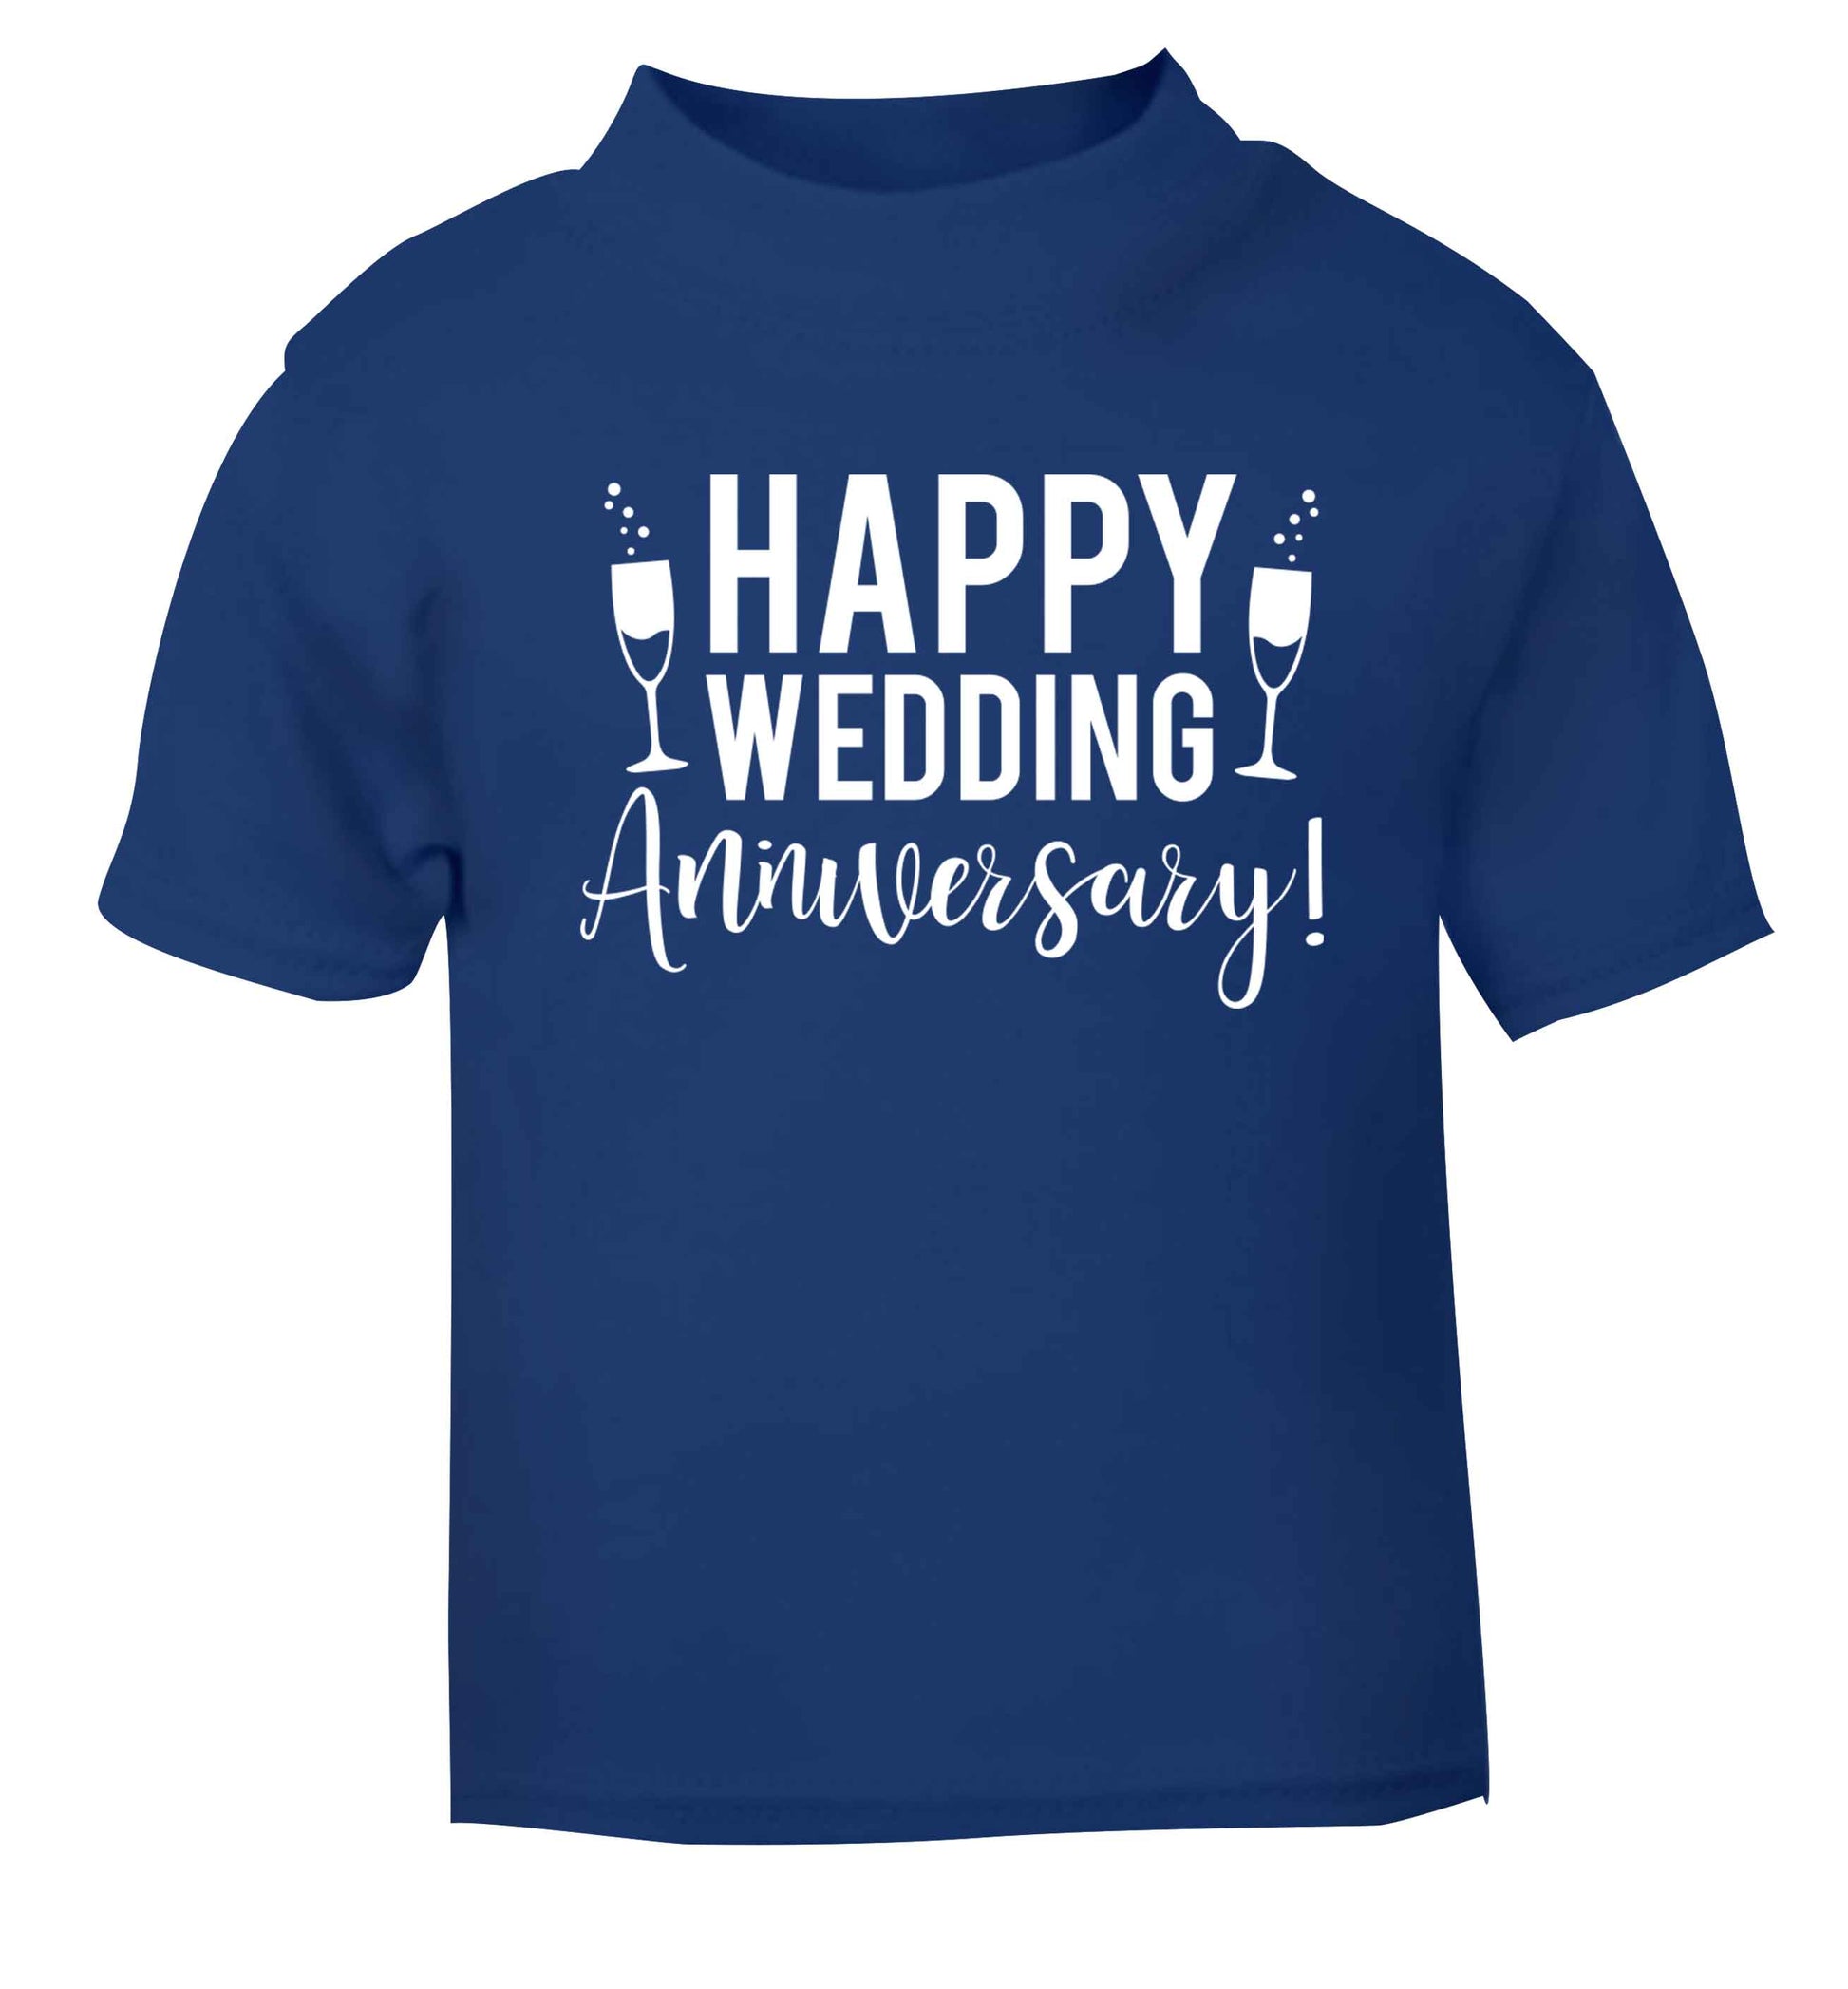 Happy wedding anniversary! blue baby toddler Tshirt 2 Years